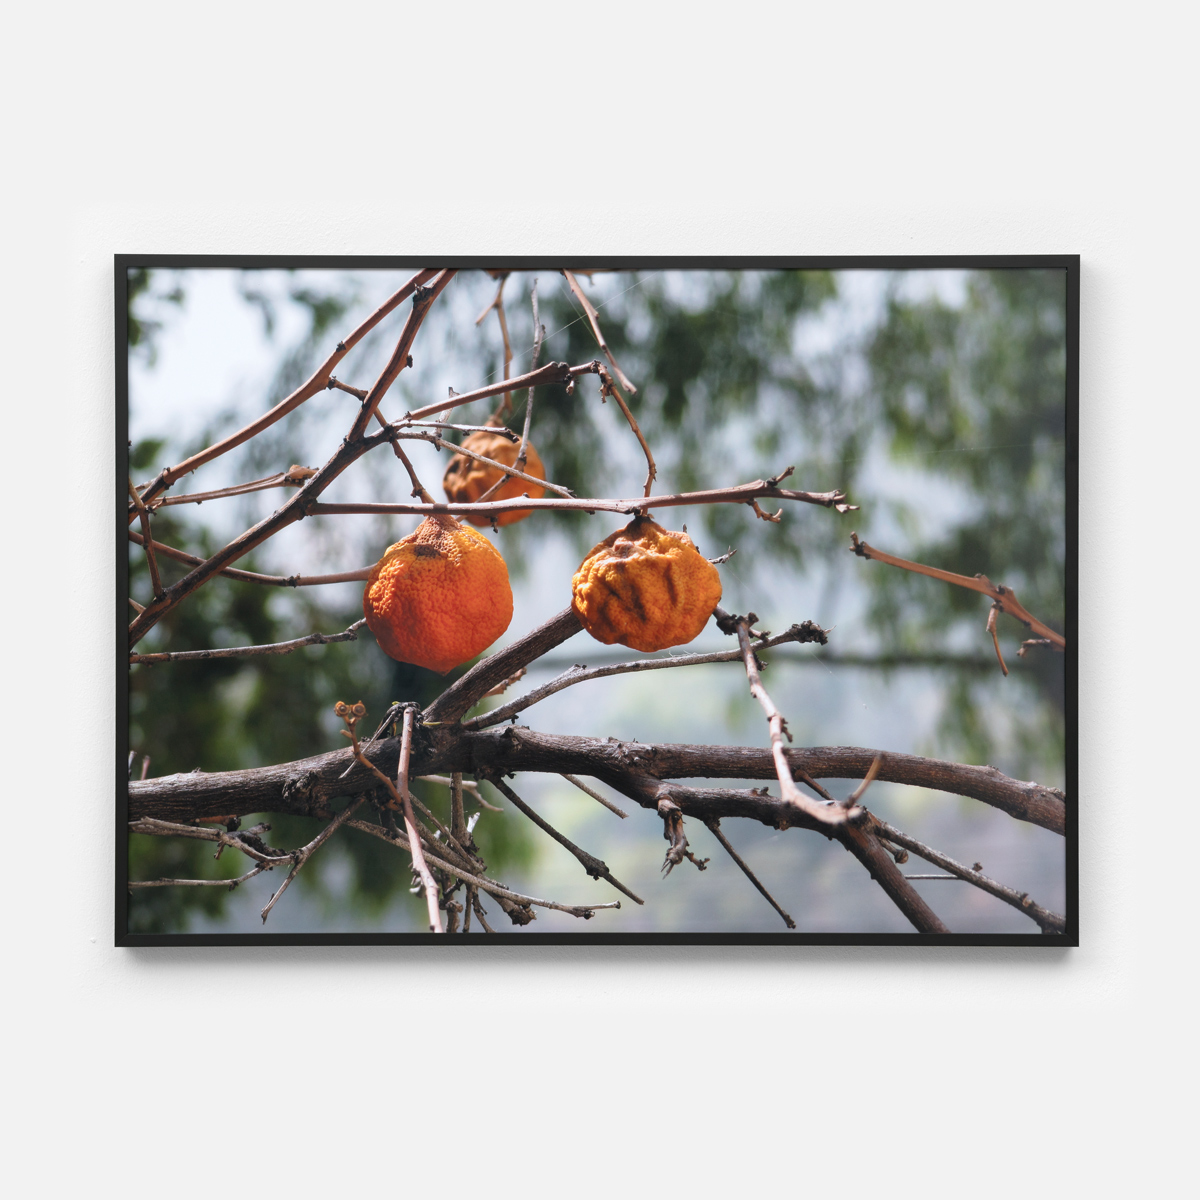 Untitled (Oranges) III